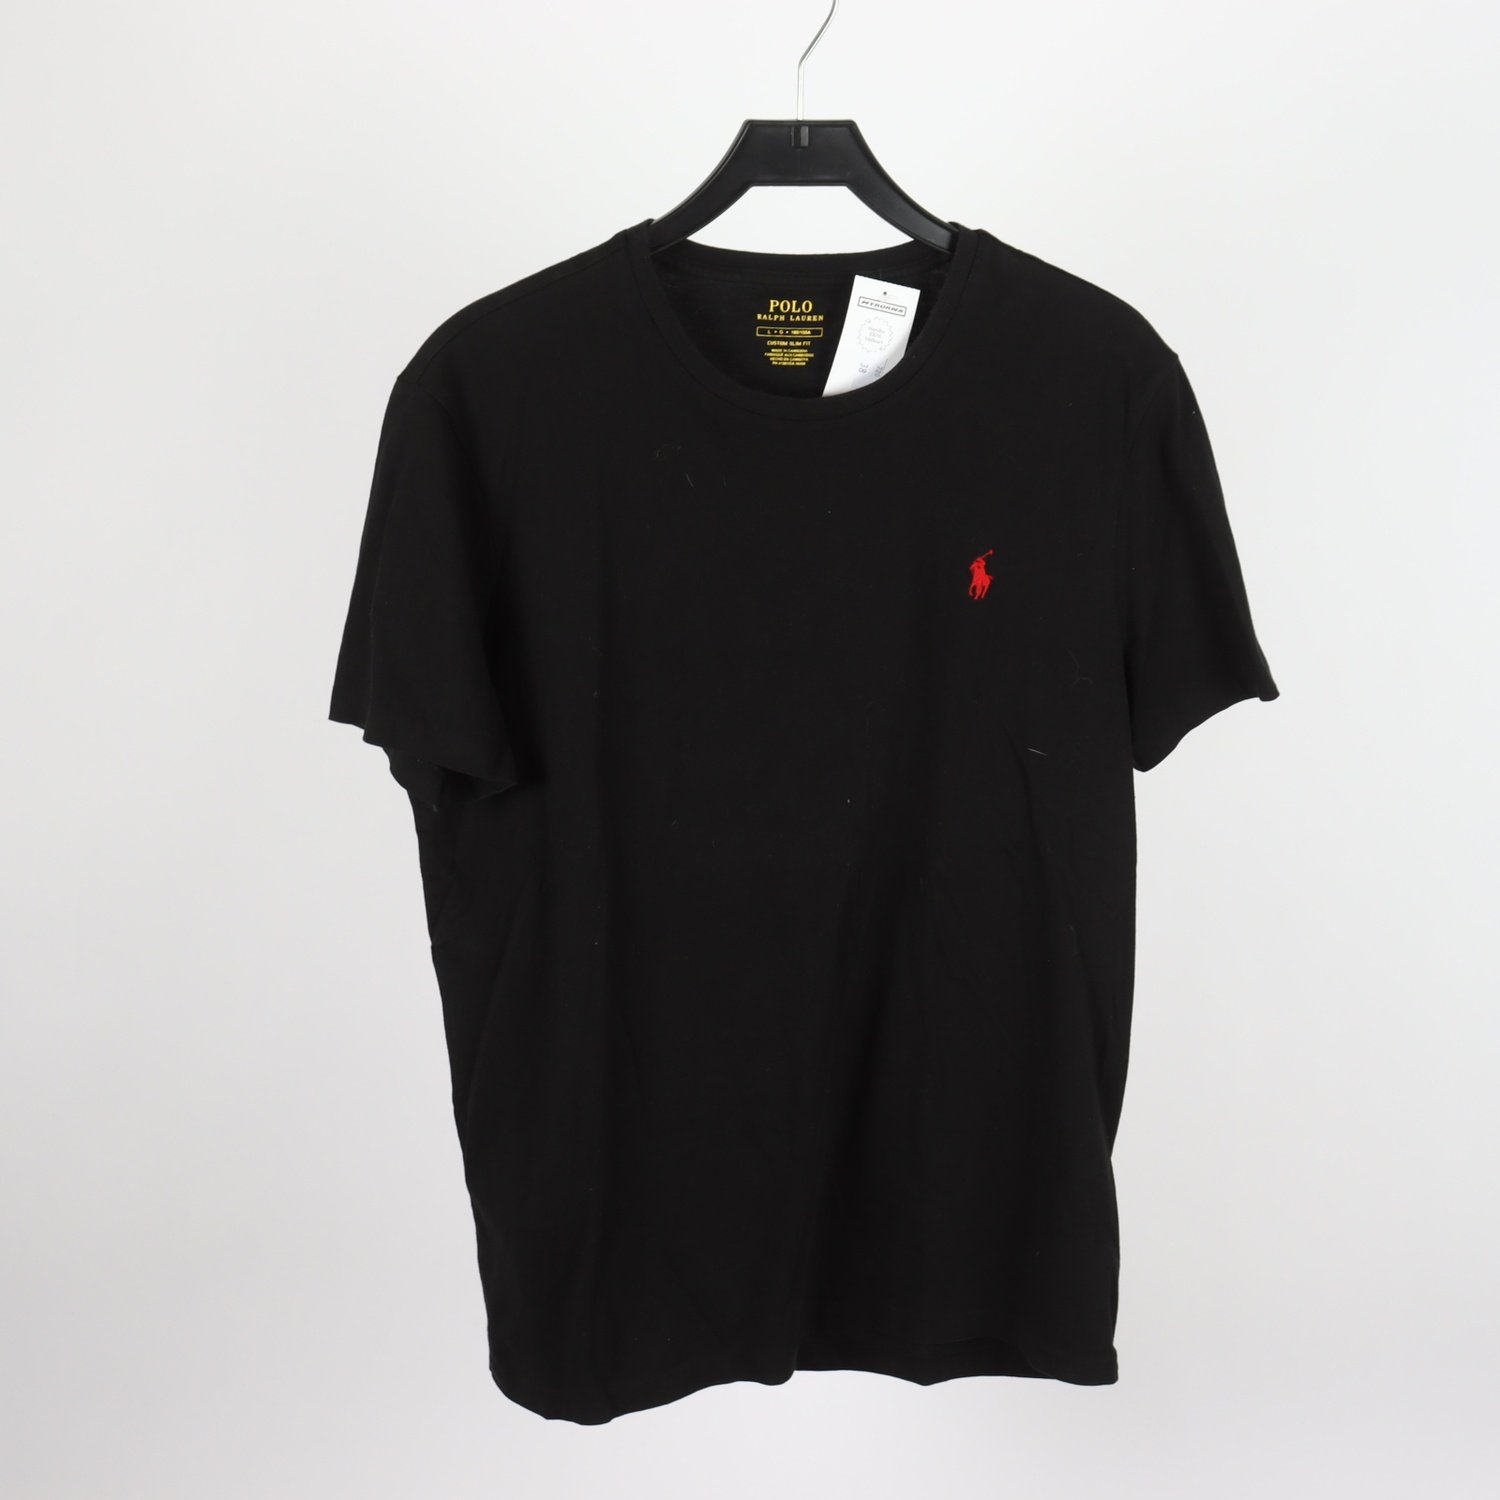 T-shirt, Polo Ralph Lauren, svart, stl. L